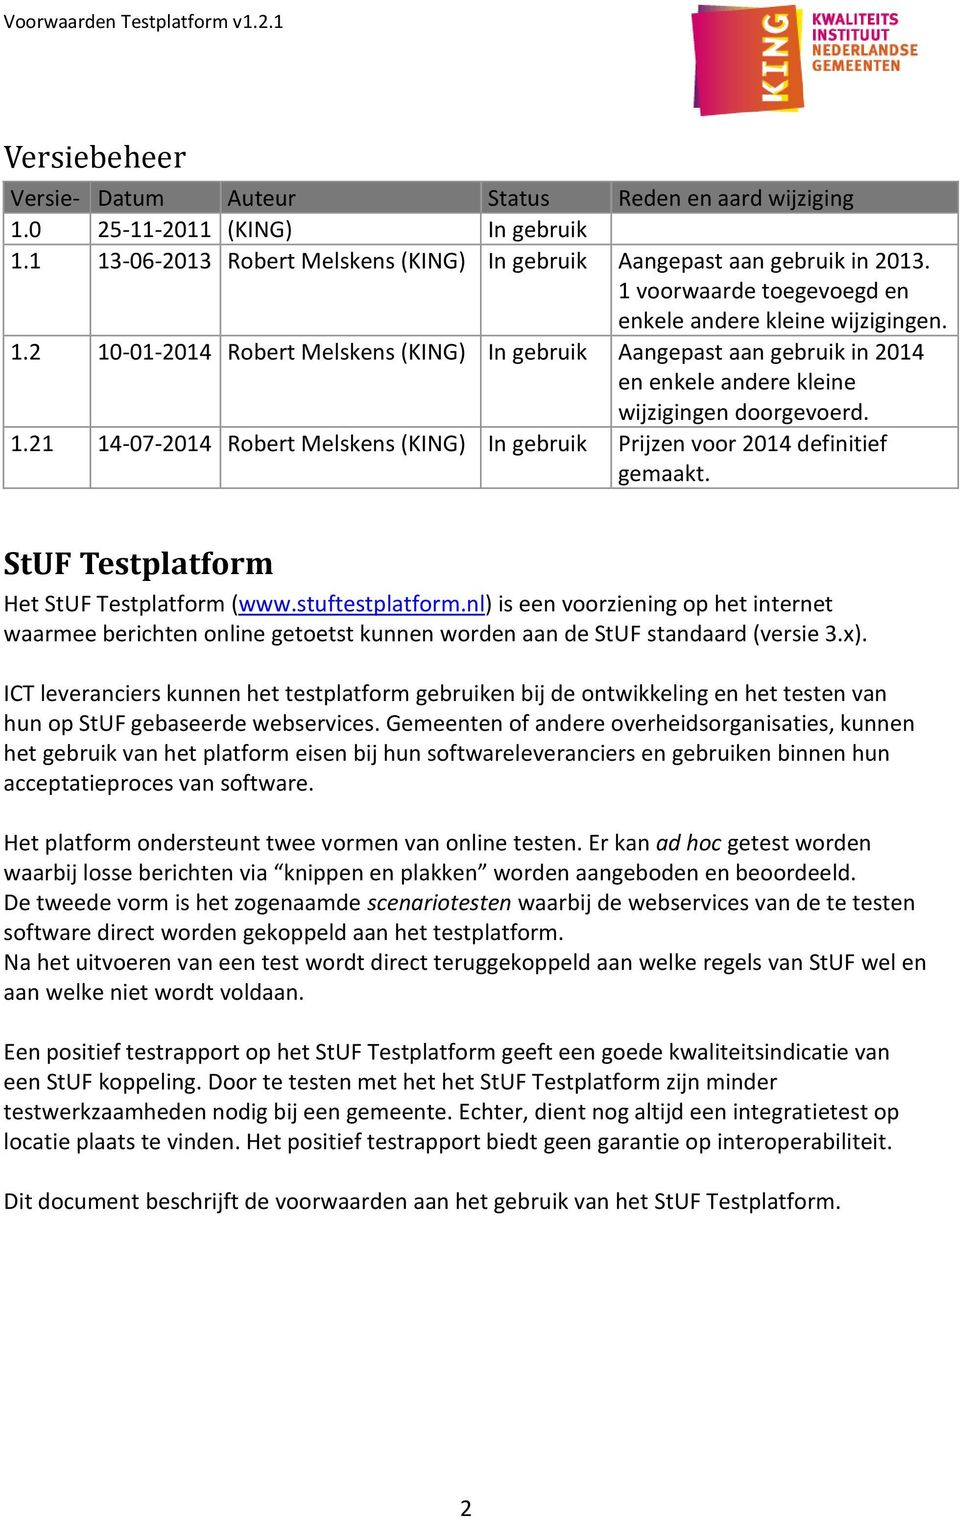 StUF Testplatform Het StUF Testplatform (www.stuftestplatform.nl) is een voorziening op het internet waarmee berichten online getoetst kunnen worden aan de StUF standaard (versie 3.x).